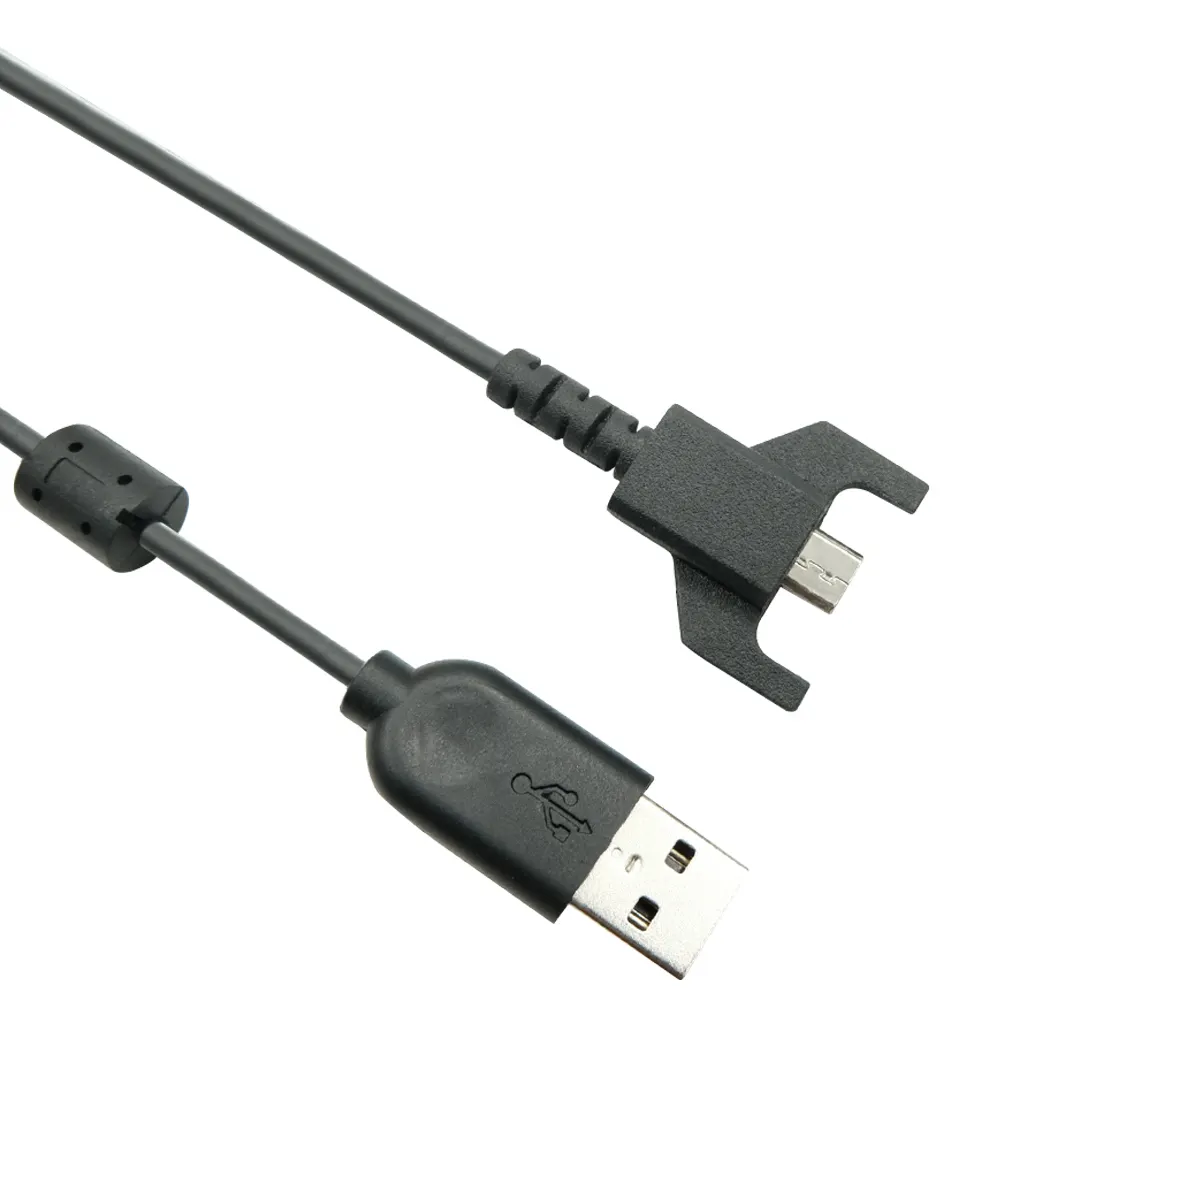 G703 G900 G903 G प्रो वायरलेस G प्रो X सुपरलाइट गेमिंग माउस के लिए लॉजिटेक ओरिजिनल USB चार्जिंग केबल, USB से माइक्रो USB (काला)